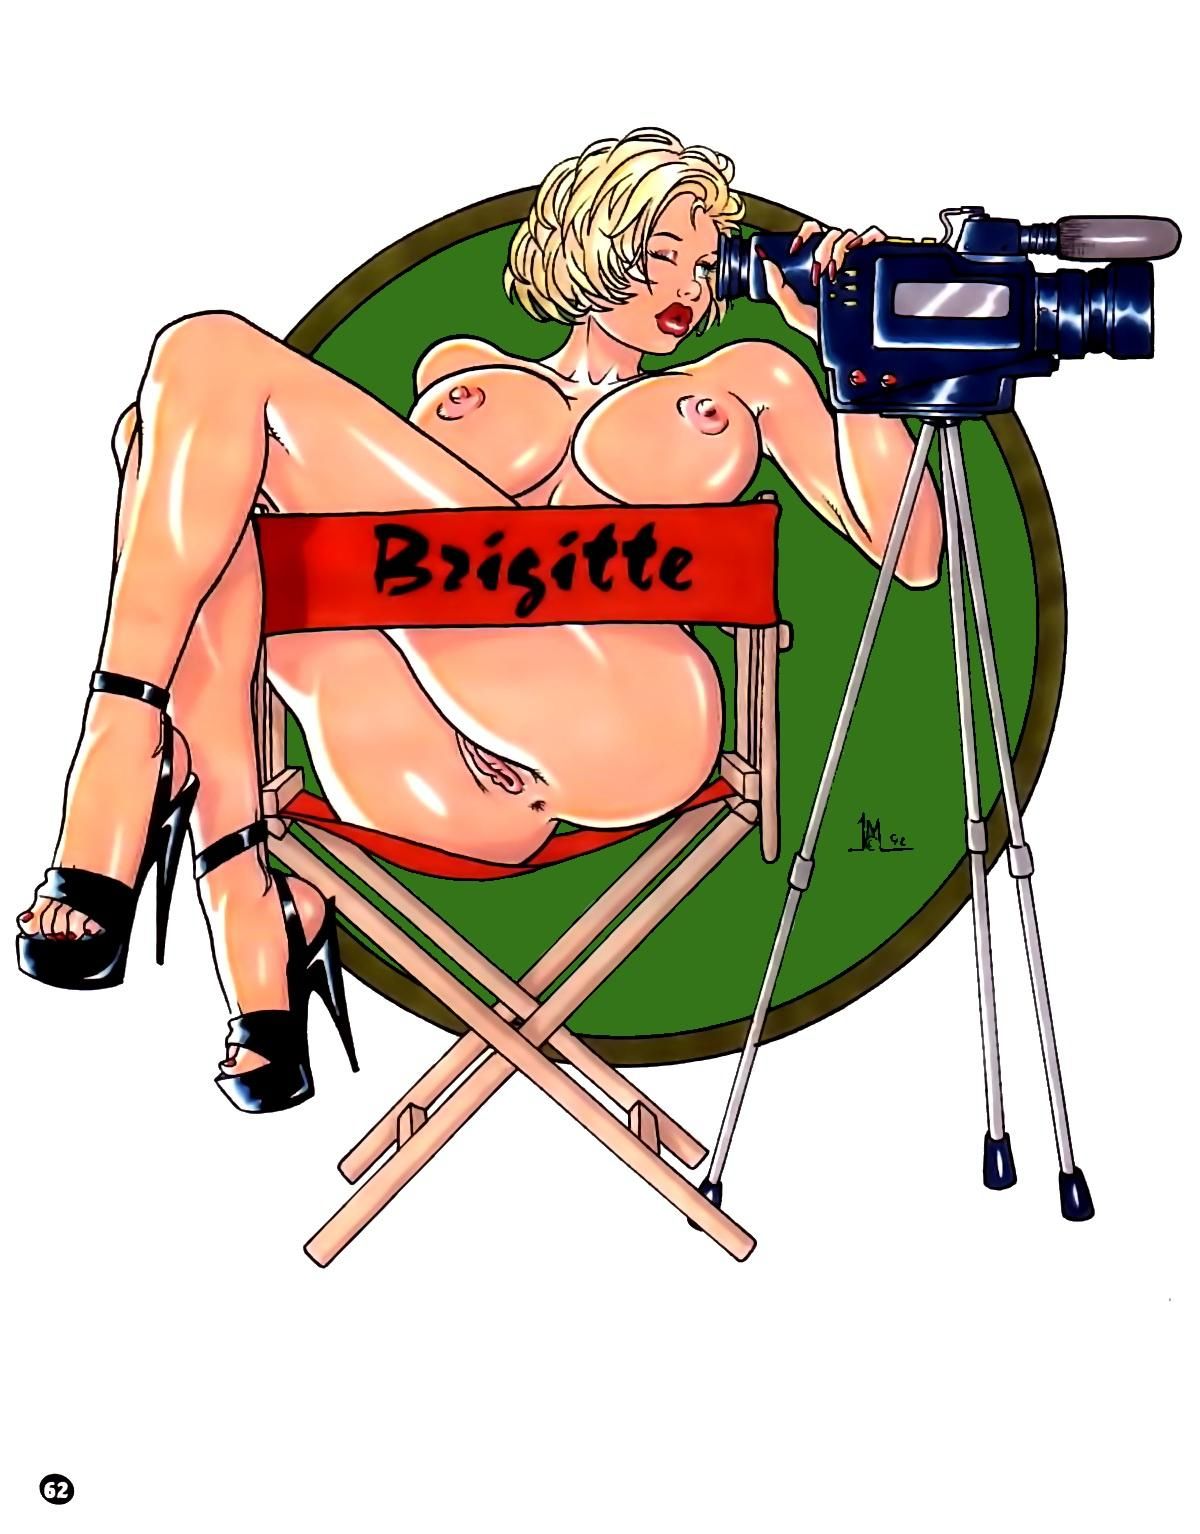  Brigitte’s Quickies Part 1 Porn Comic english 61